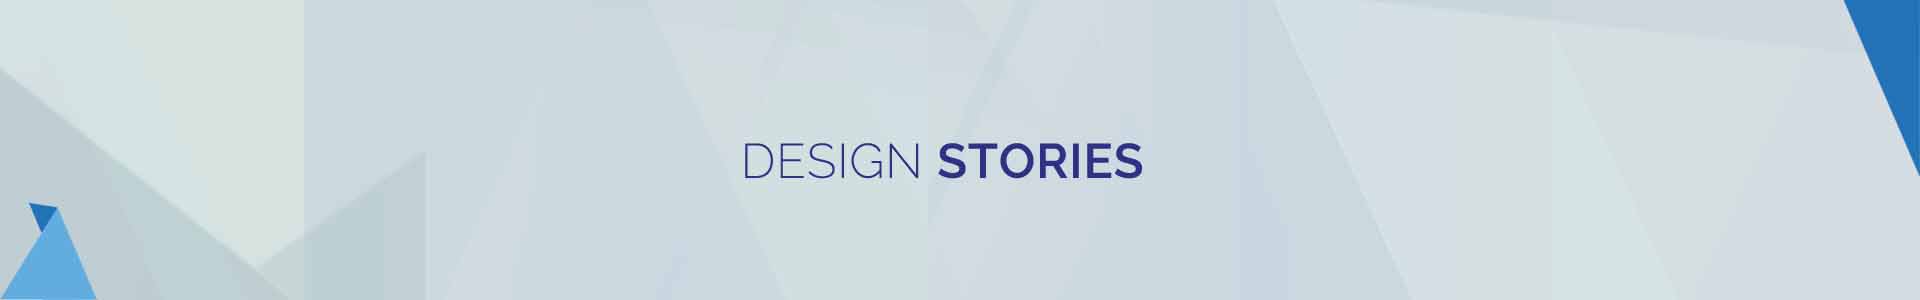 design-stories-banner